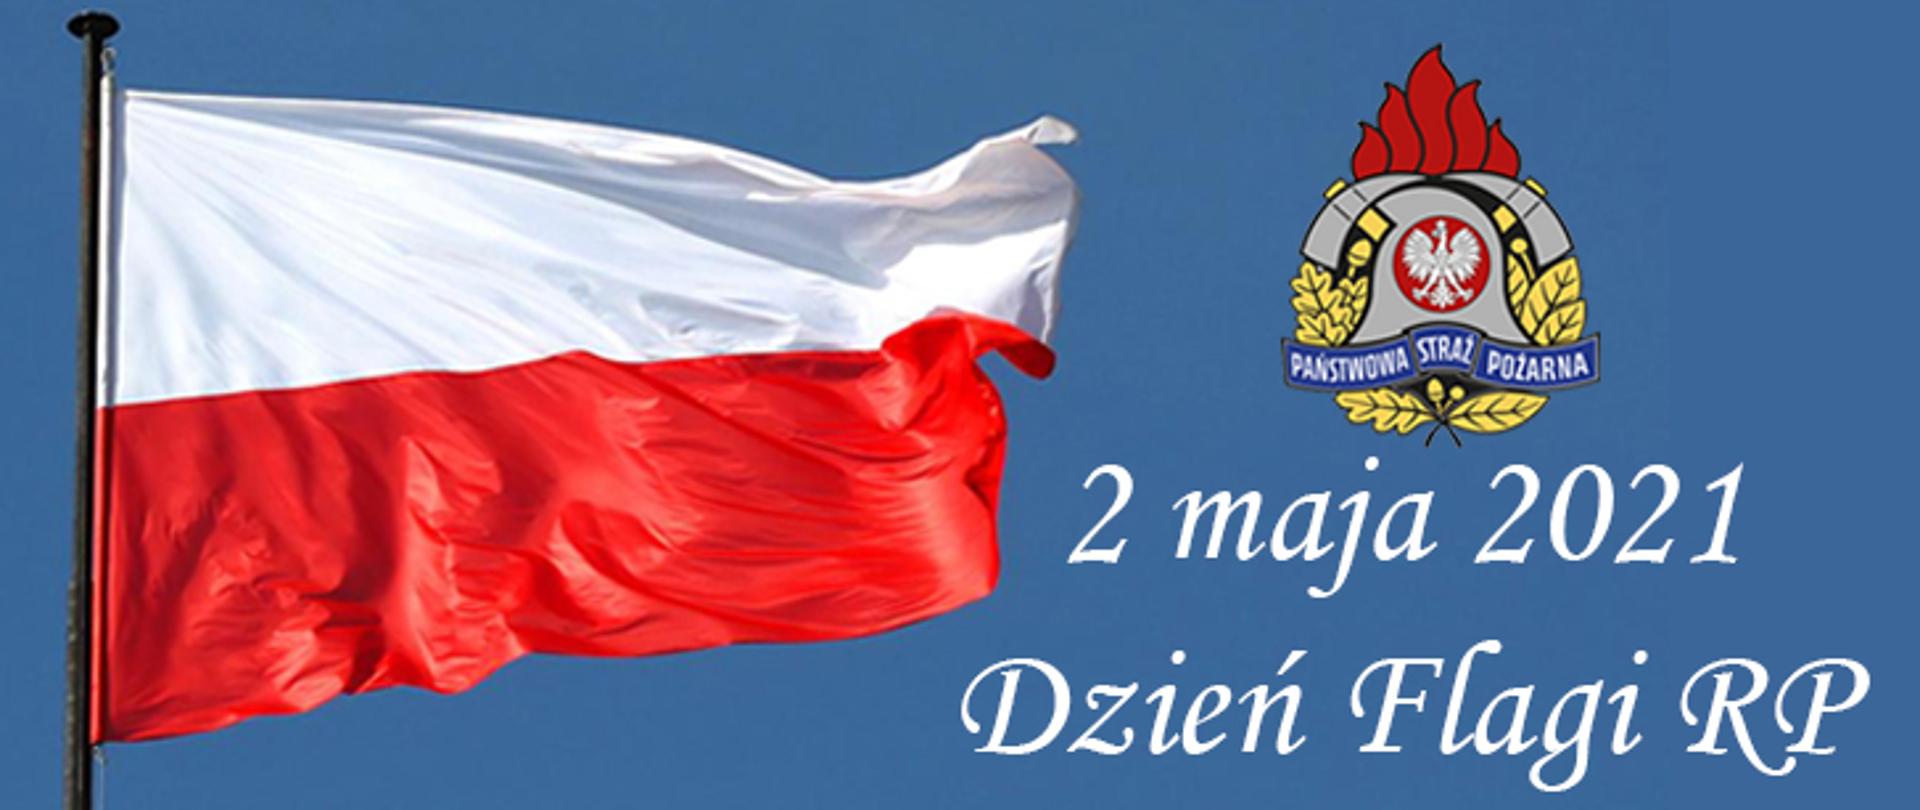 Infografika przedstawiająca powiewającą na wietrze flagę Polski na błękitnym tle, obok kolorowy logotyp Państwowej Straży Pożarnej oraz poniżej napis koloru białego o treści 2 maja 2021 Dzień Flagi RP.